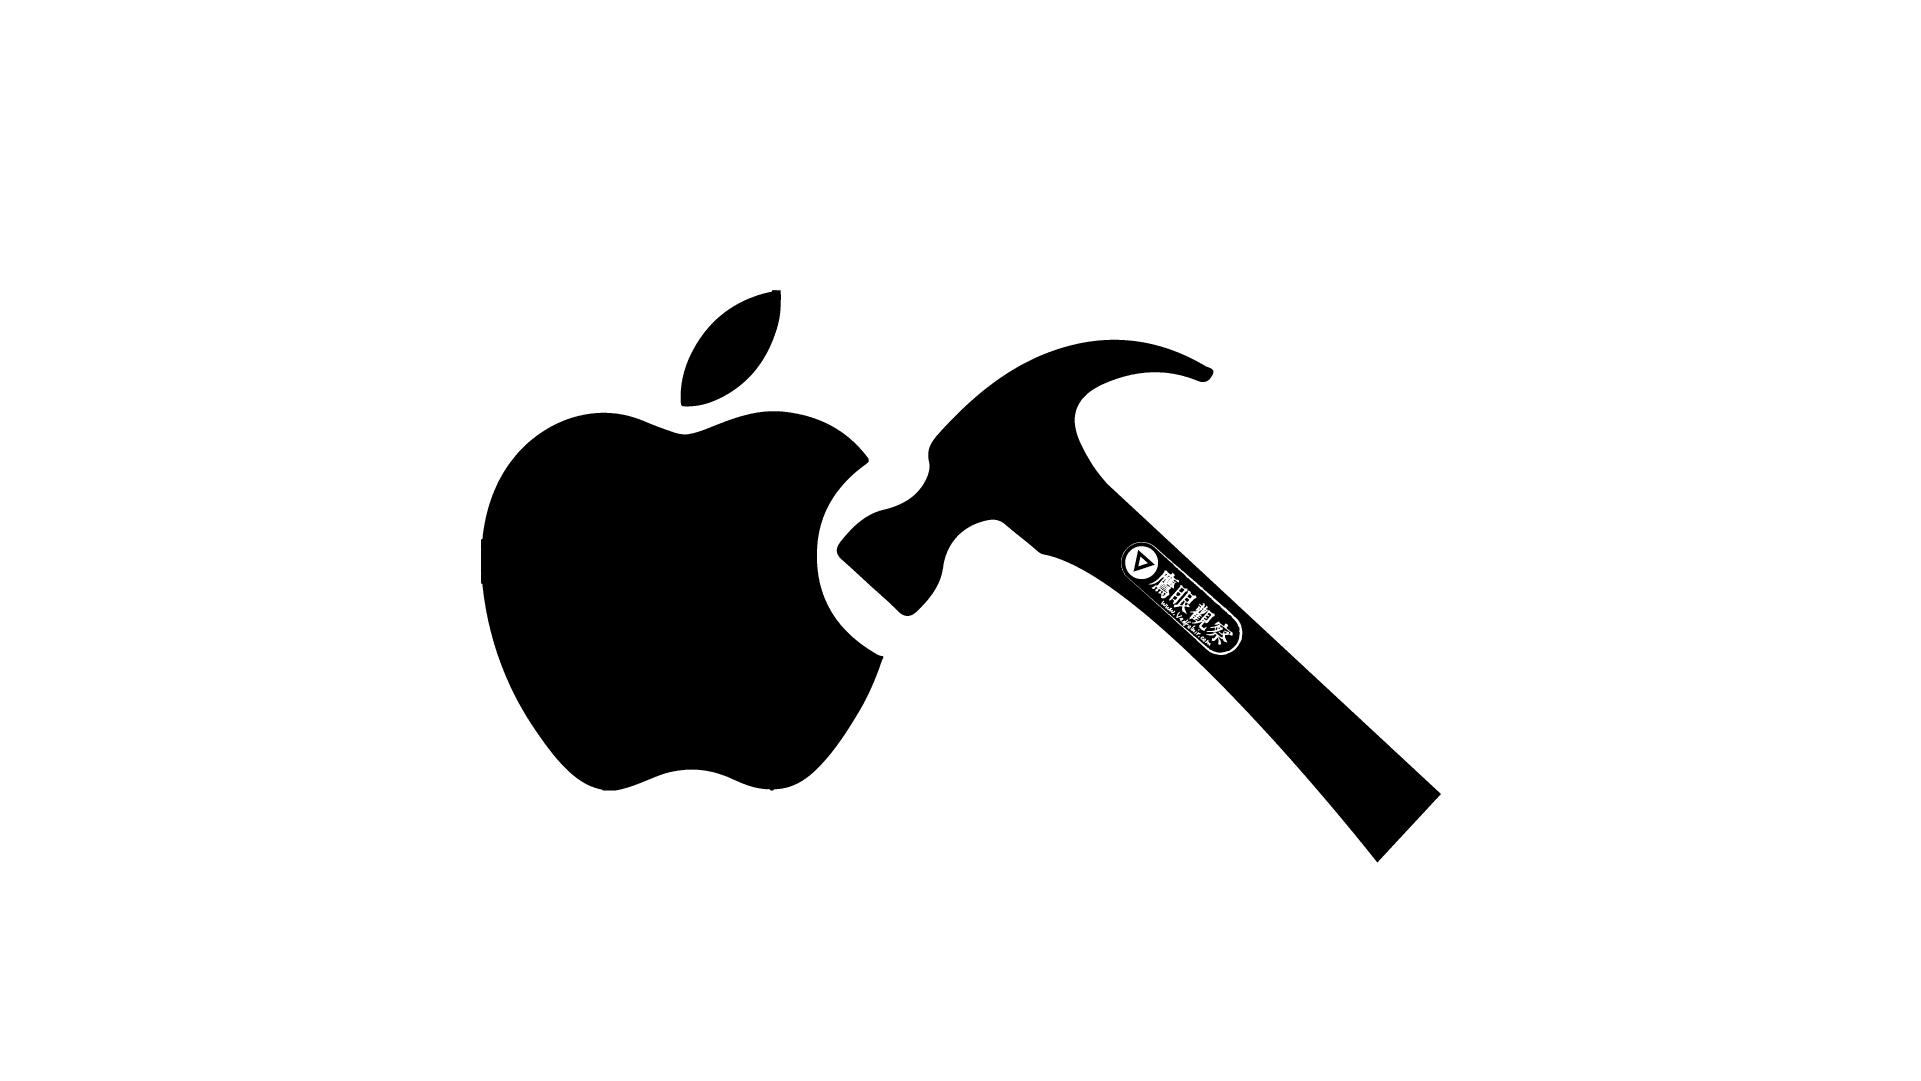 蘋果電腦 Apple macOS 的檔案瀏覽器 Finder 應用程式崩潰當機沒有回應